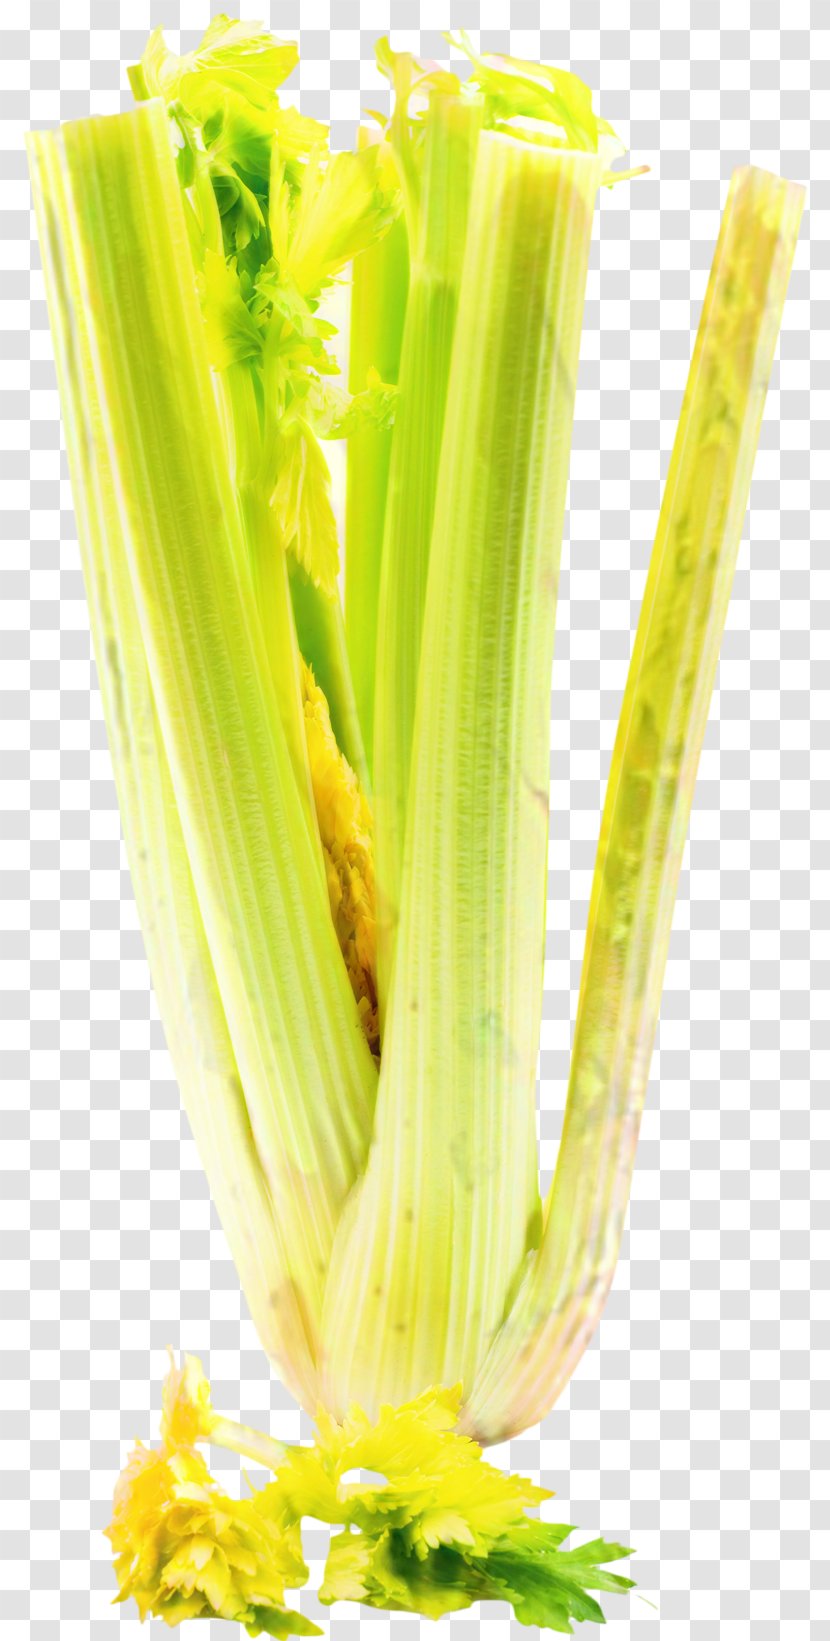 Corn Cartoon - Plant - Leaf Vegetable Transparent PNG